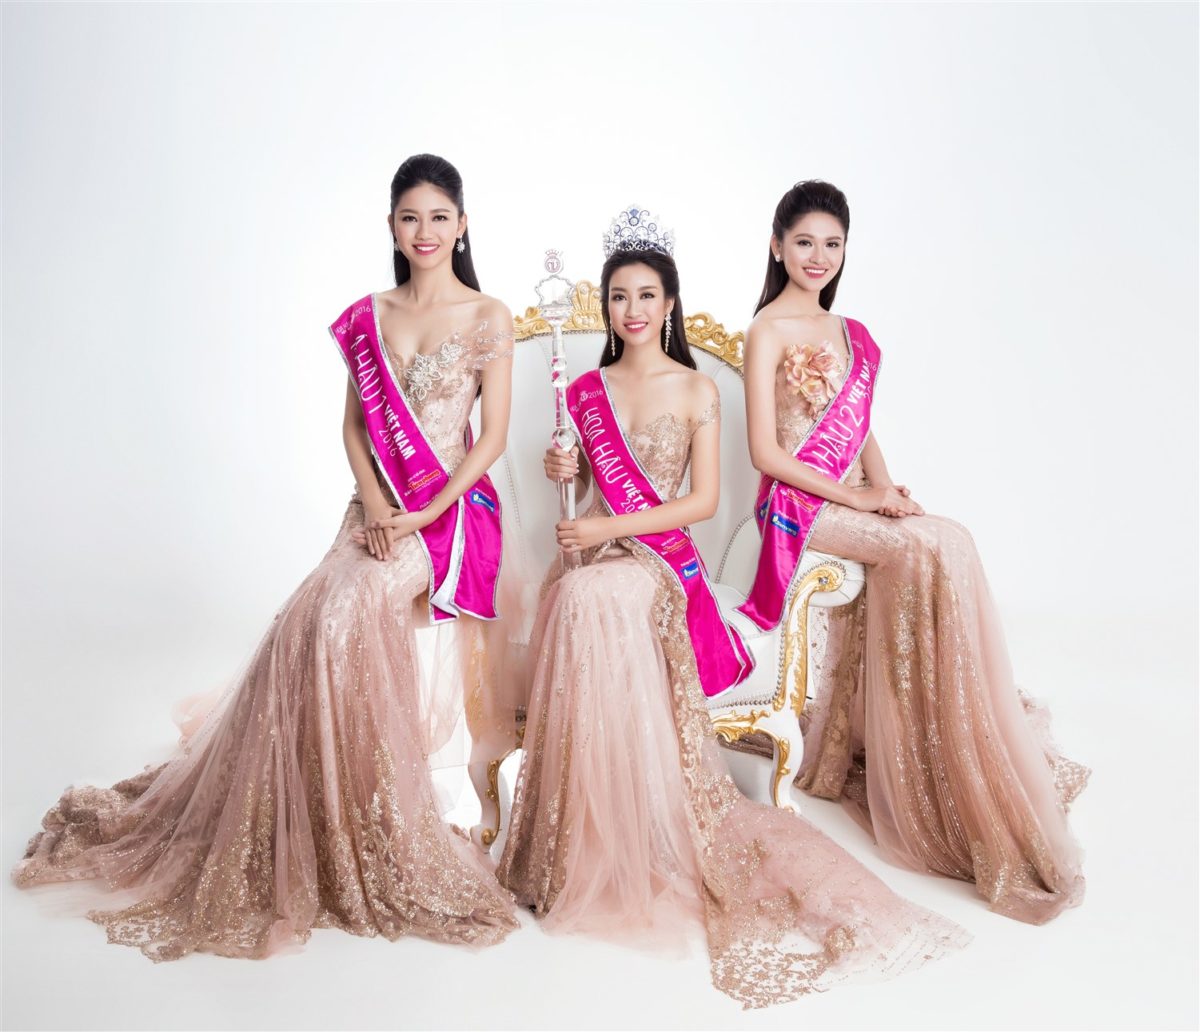 Ngắm nhan sắc kiêu kỳ của Top 3 Hoa hậu Việt Nam trong bộ ảnh dạ hội